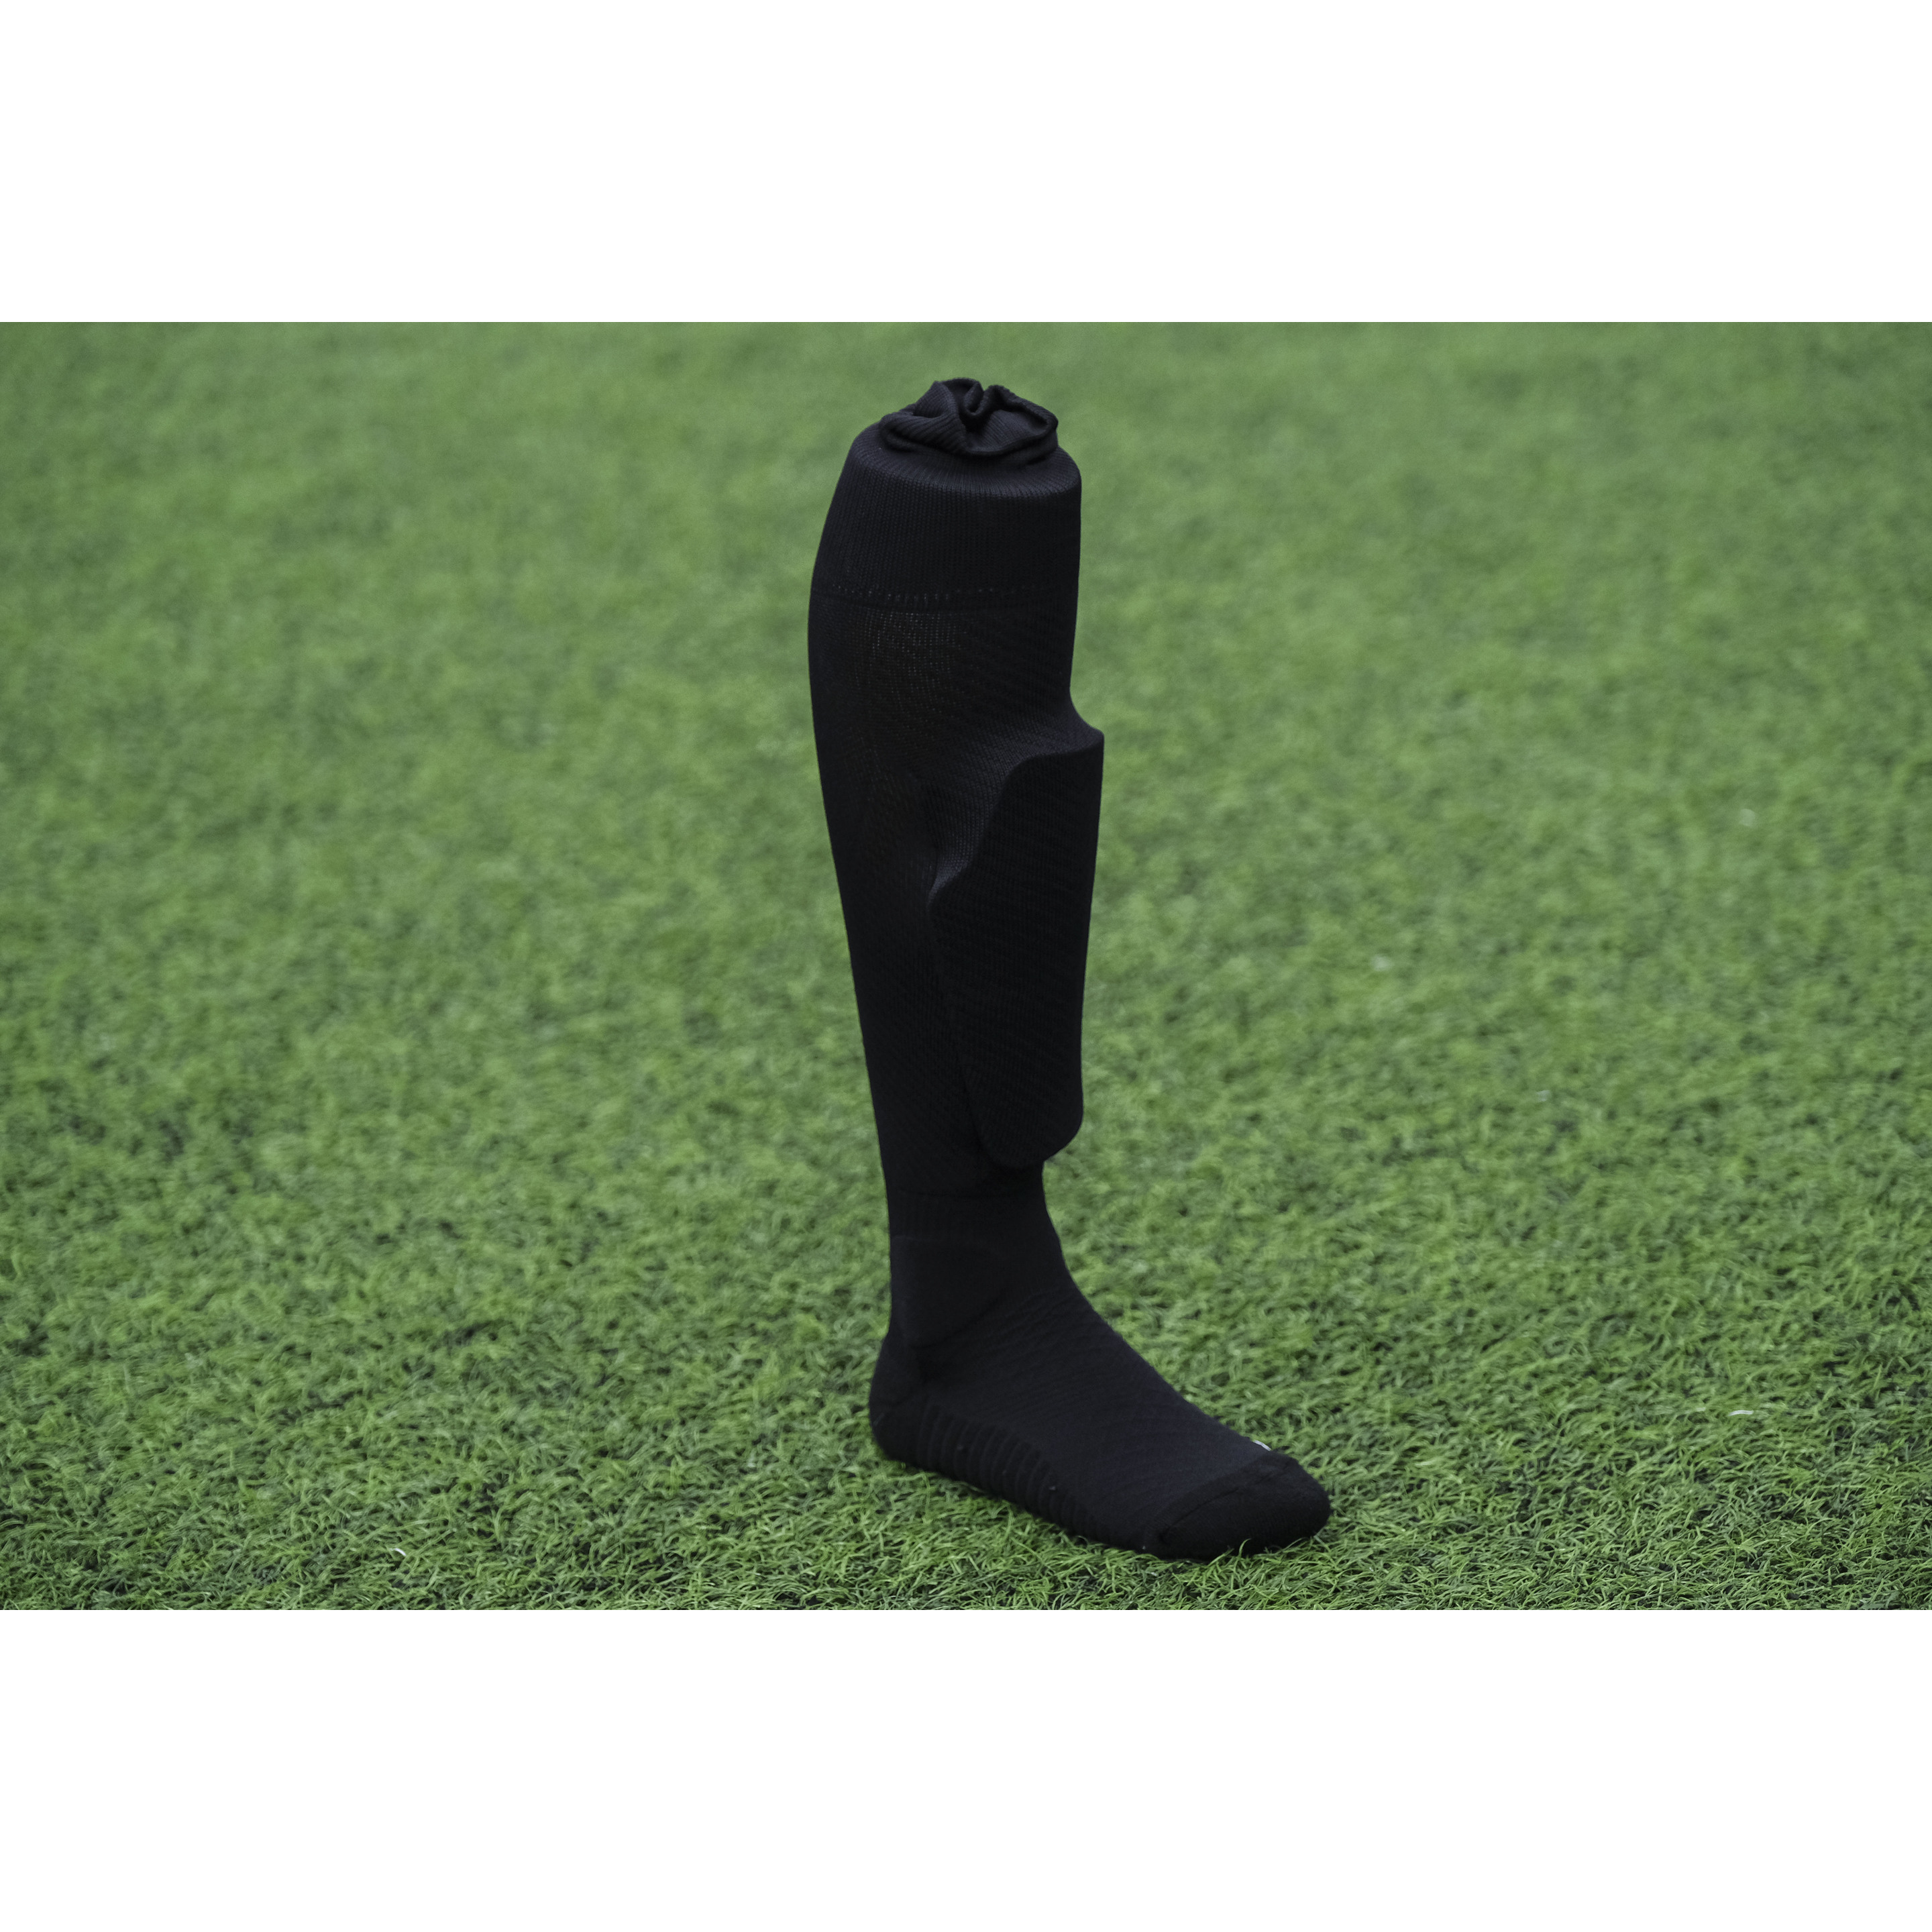 Calcetin Sockapro De Futbol - Negro - Fijación patentada de espinilleras  MKP